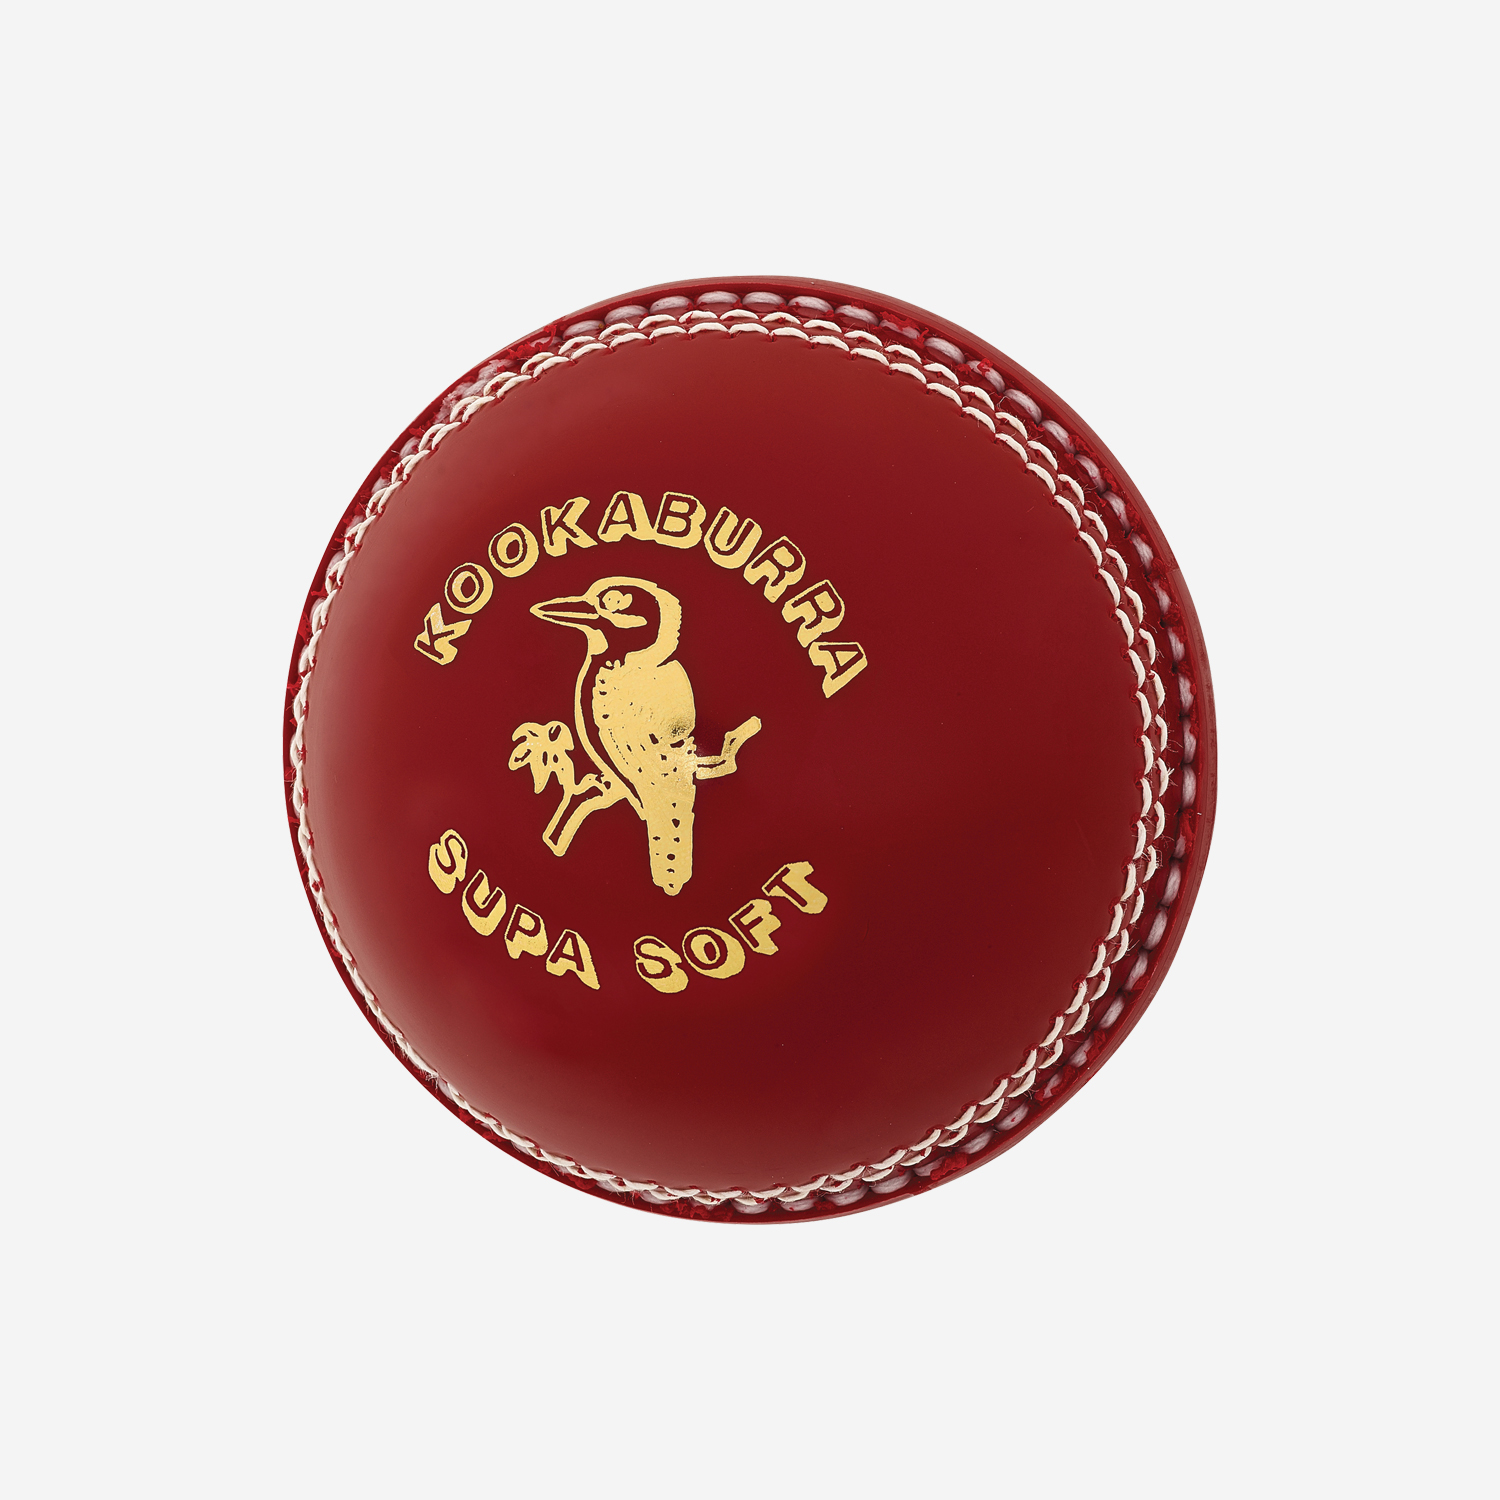 Kookaburra Supa Soft Cricket Ball